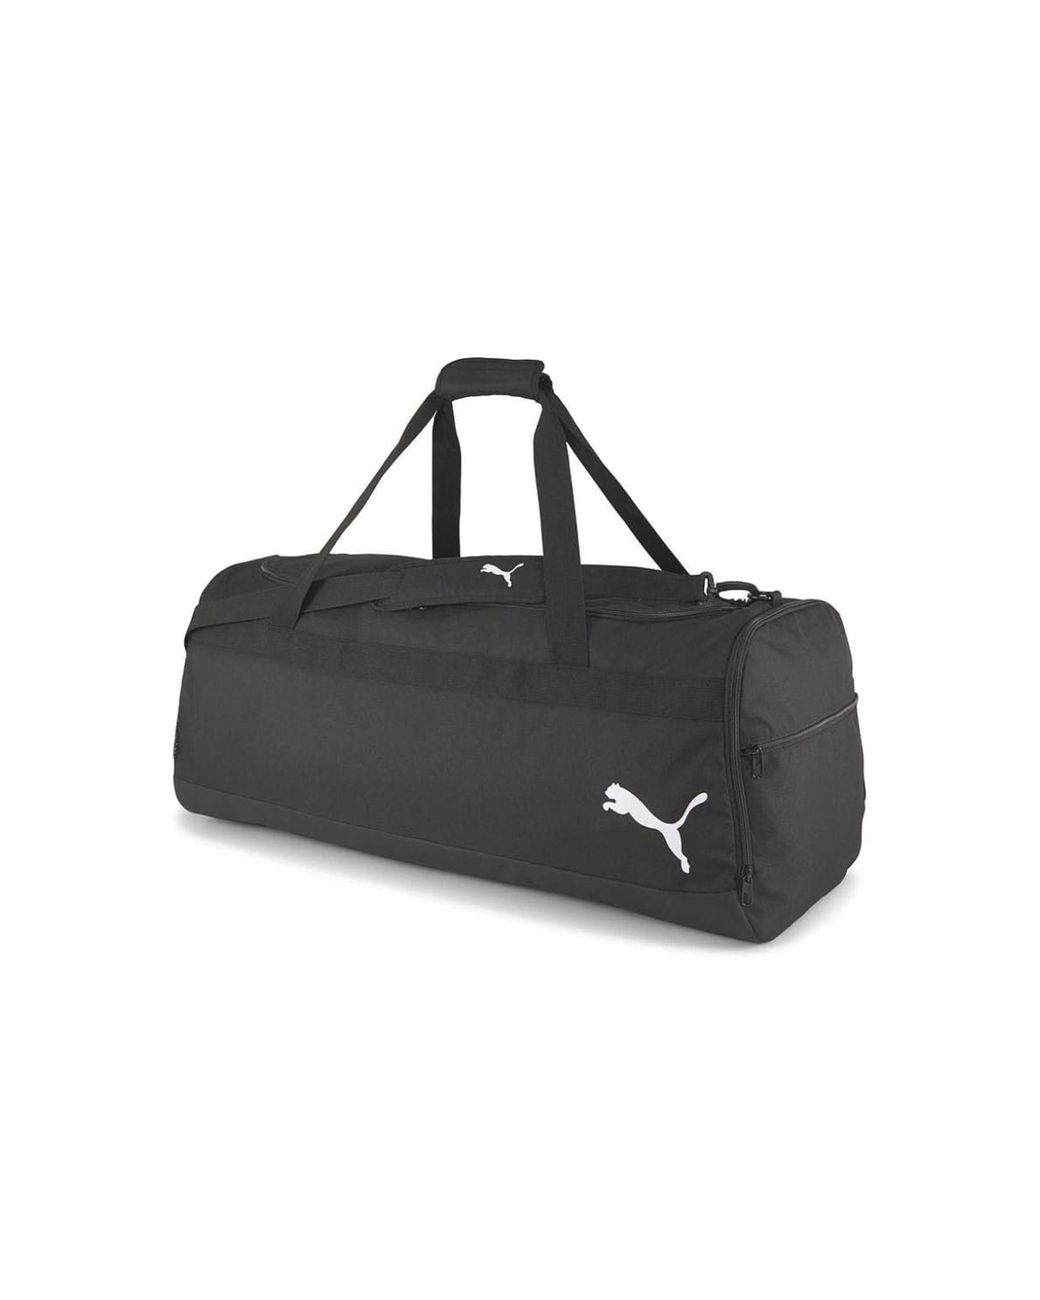 PUMA Large Duffel Bag With Wheels in Black | Lyst